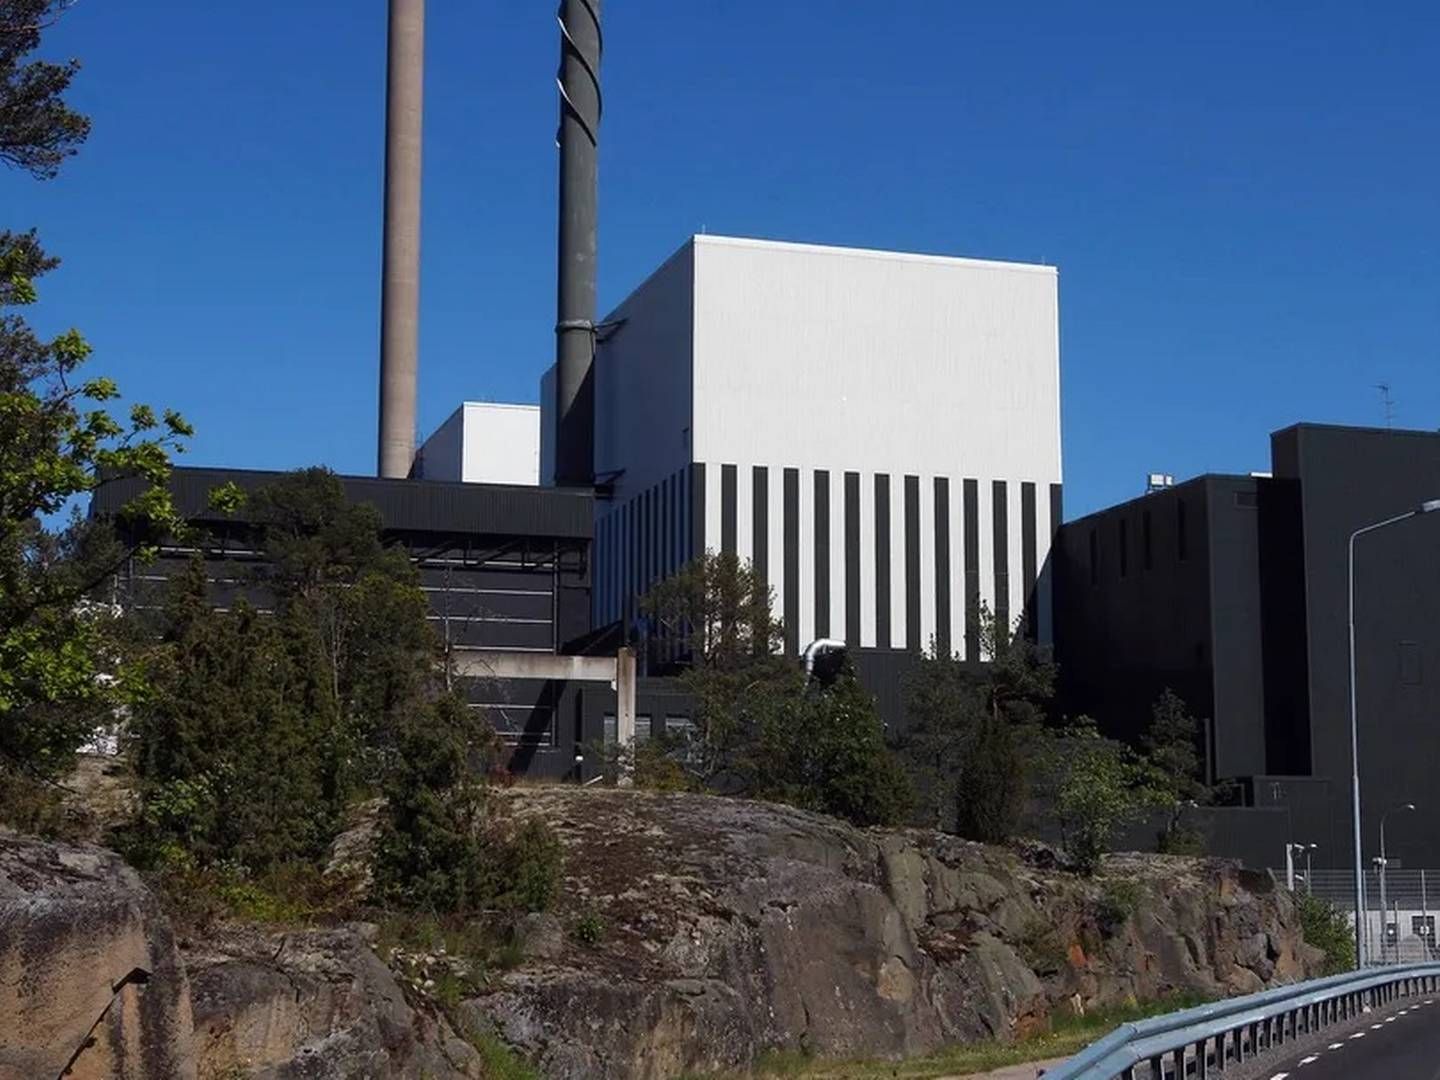 KJERNEKRAFT: Fremover skriver onsdag at det åpnes for arealer til kjernekraft i forslaget til ny kommuneplan for Narvik. | Foto: Mikael Fritzon / SCANPIX SVERIGE